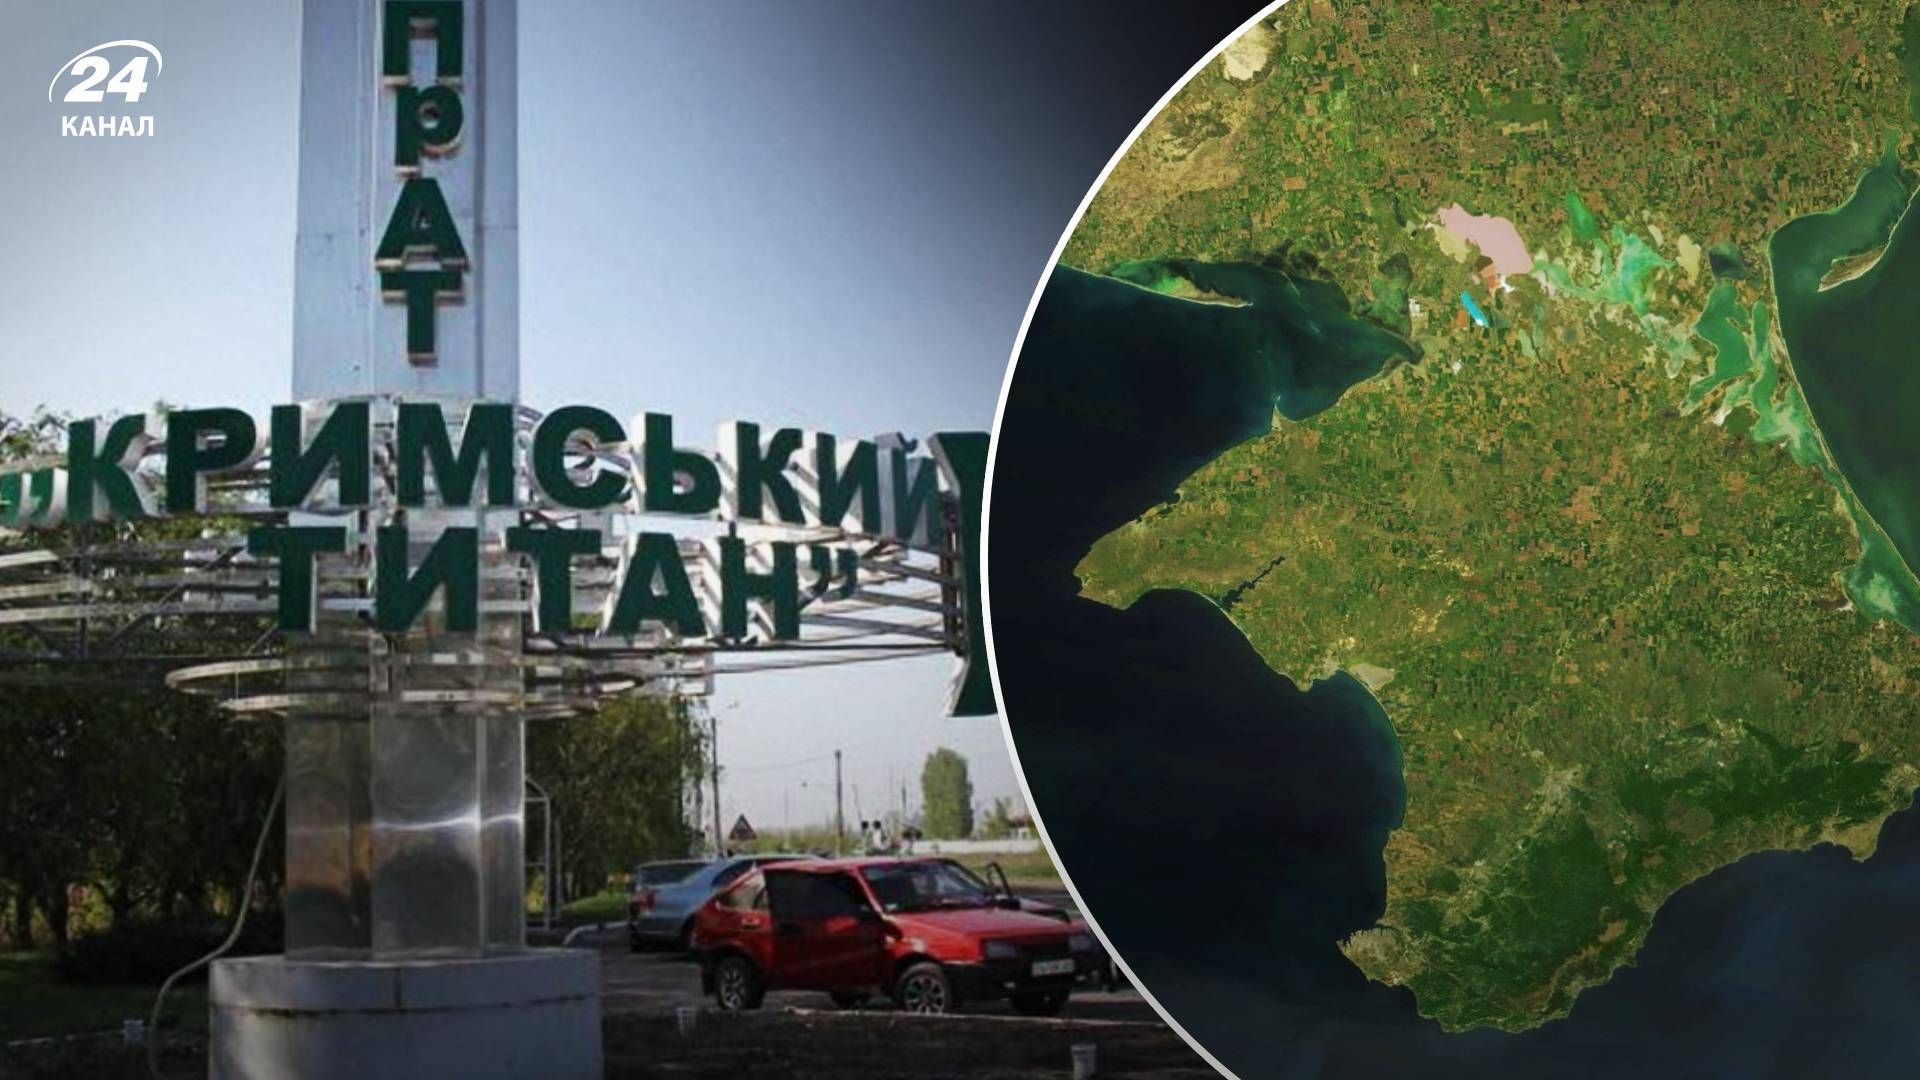 Провокации на Крымском титане - взорвут ли оккупанты химический завод в Армянске